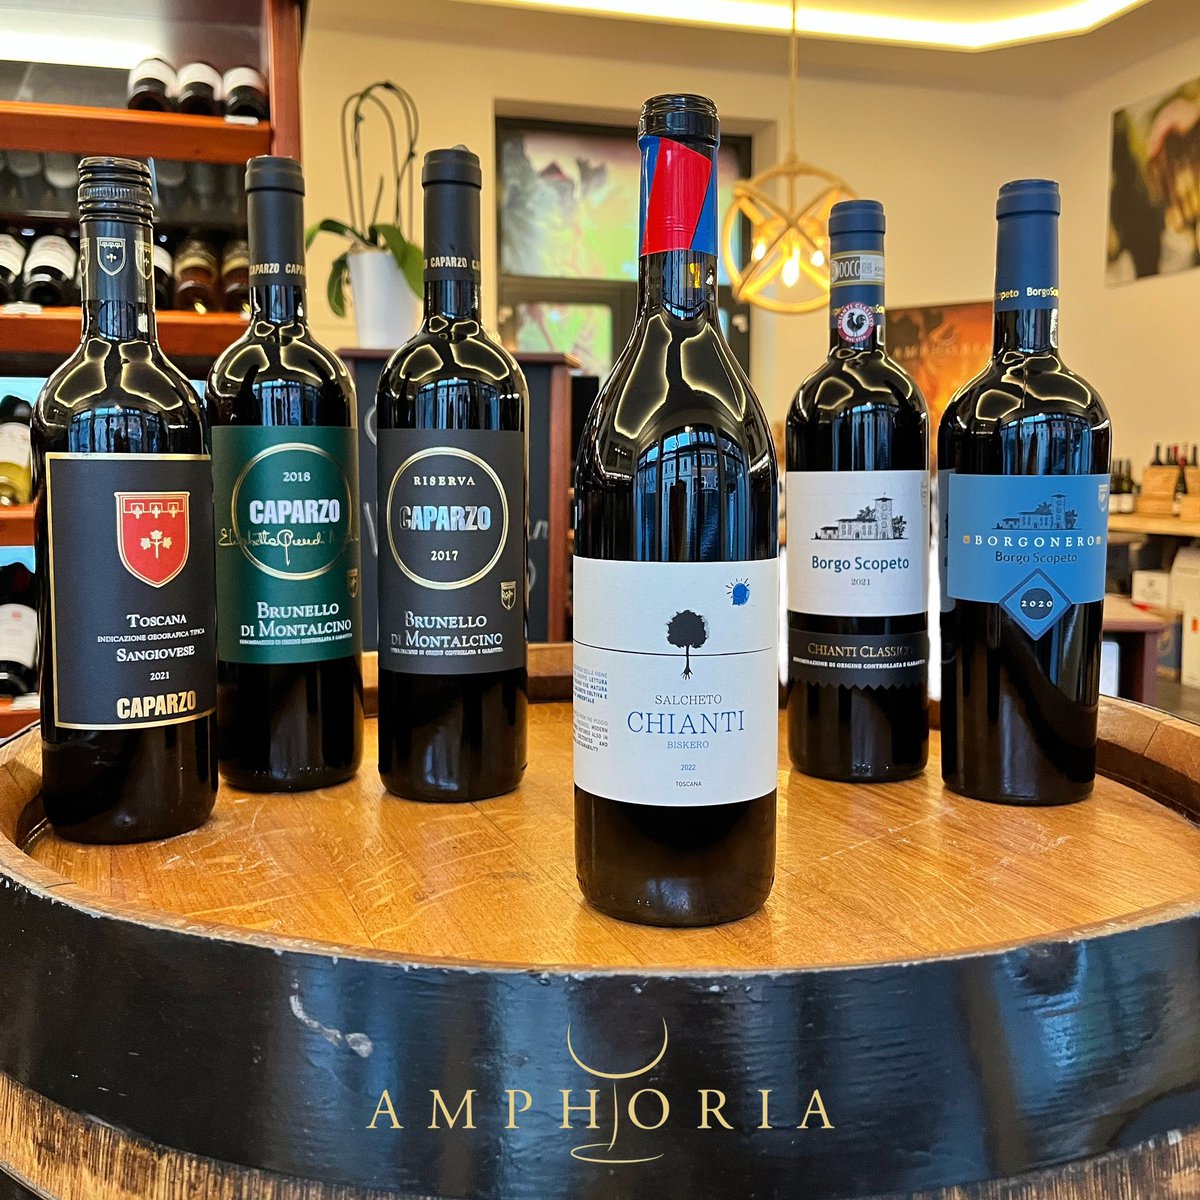 Passend zur Jahreszeit haben wir unsere Regale aufgefüllt mit 6 charakteristischen Weinen aus der Toskana - alle vorab verkostet und bewusst ausgewählt😋🍷🇮🇹 Perfekt für gesellige Runden, festliche Mahlzeiten oder als Geschenk!🎁#toskanaweine #weinliebe